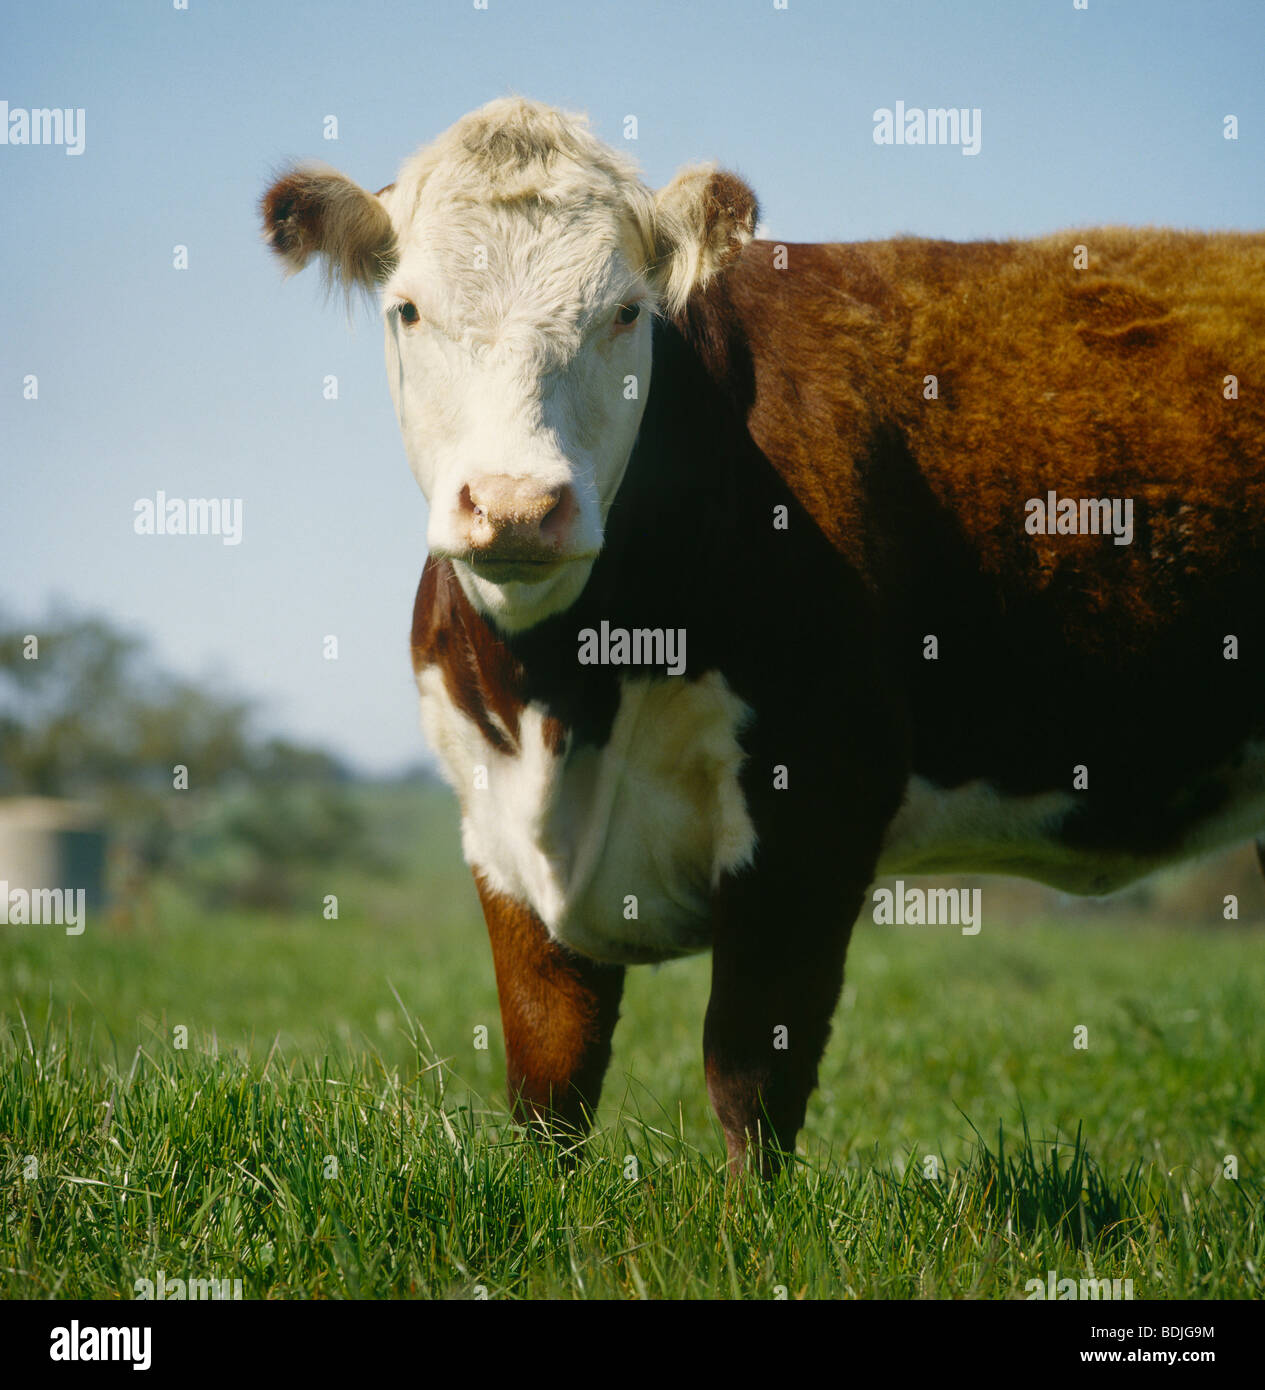 El ganado vacuno, Hereford Heifer pastoreo Foto de stock